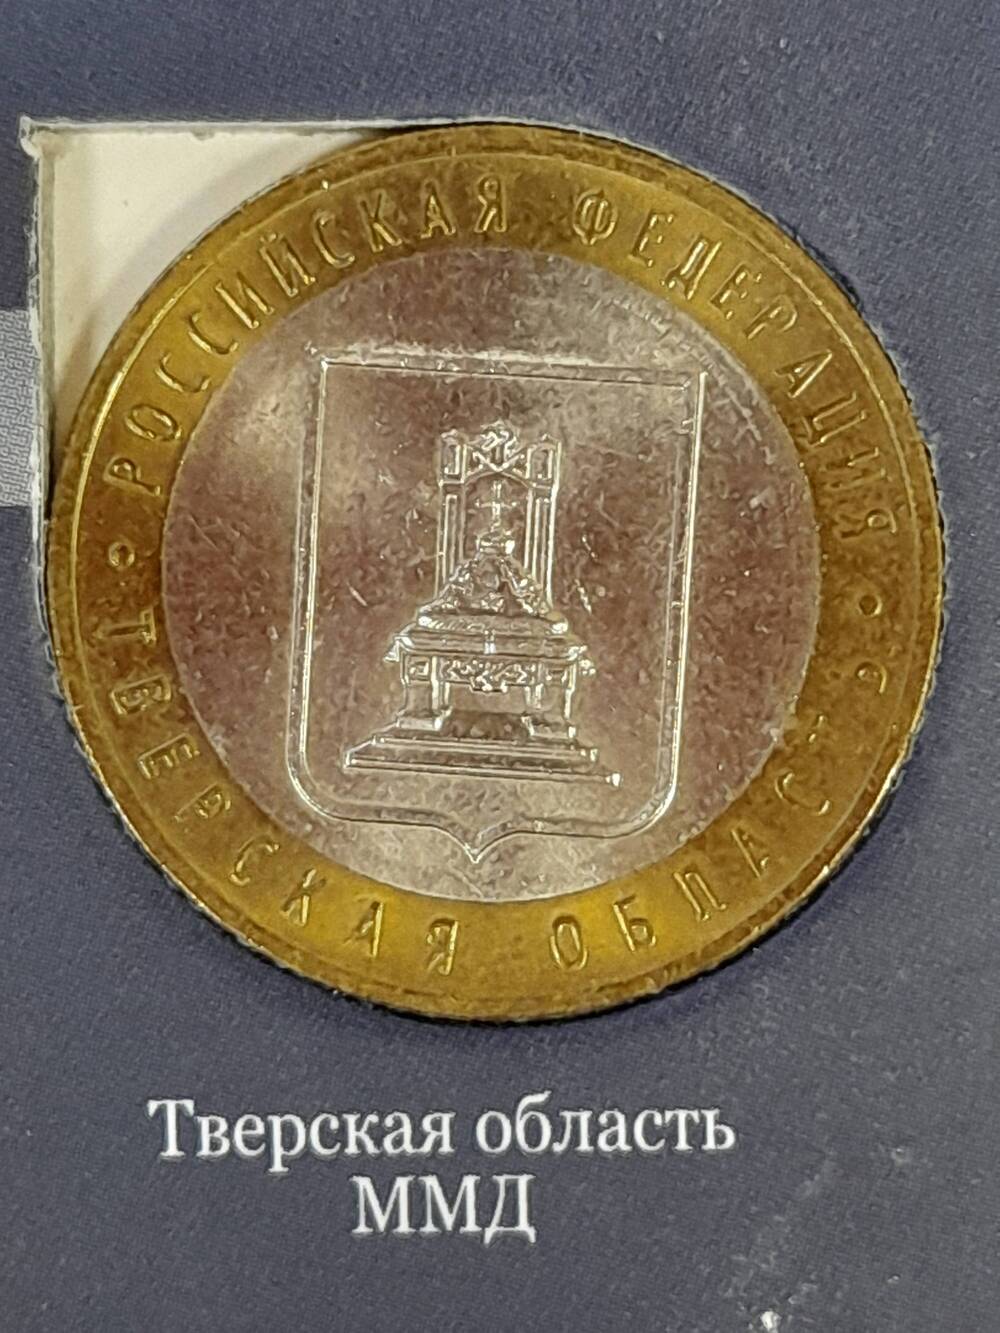 Монета памятная 10 РУБЛЕЙ. Тверская область 2005 г. Россия